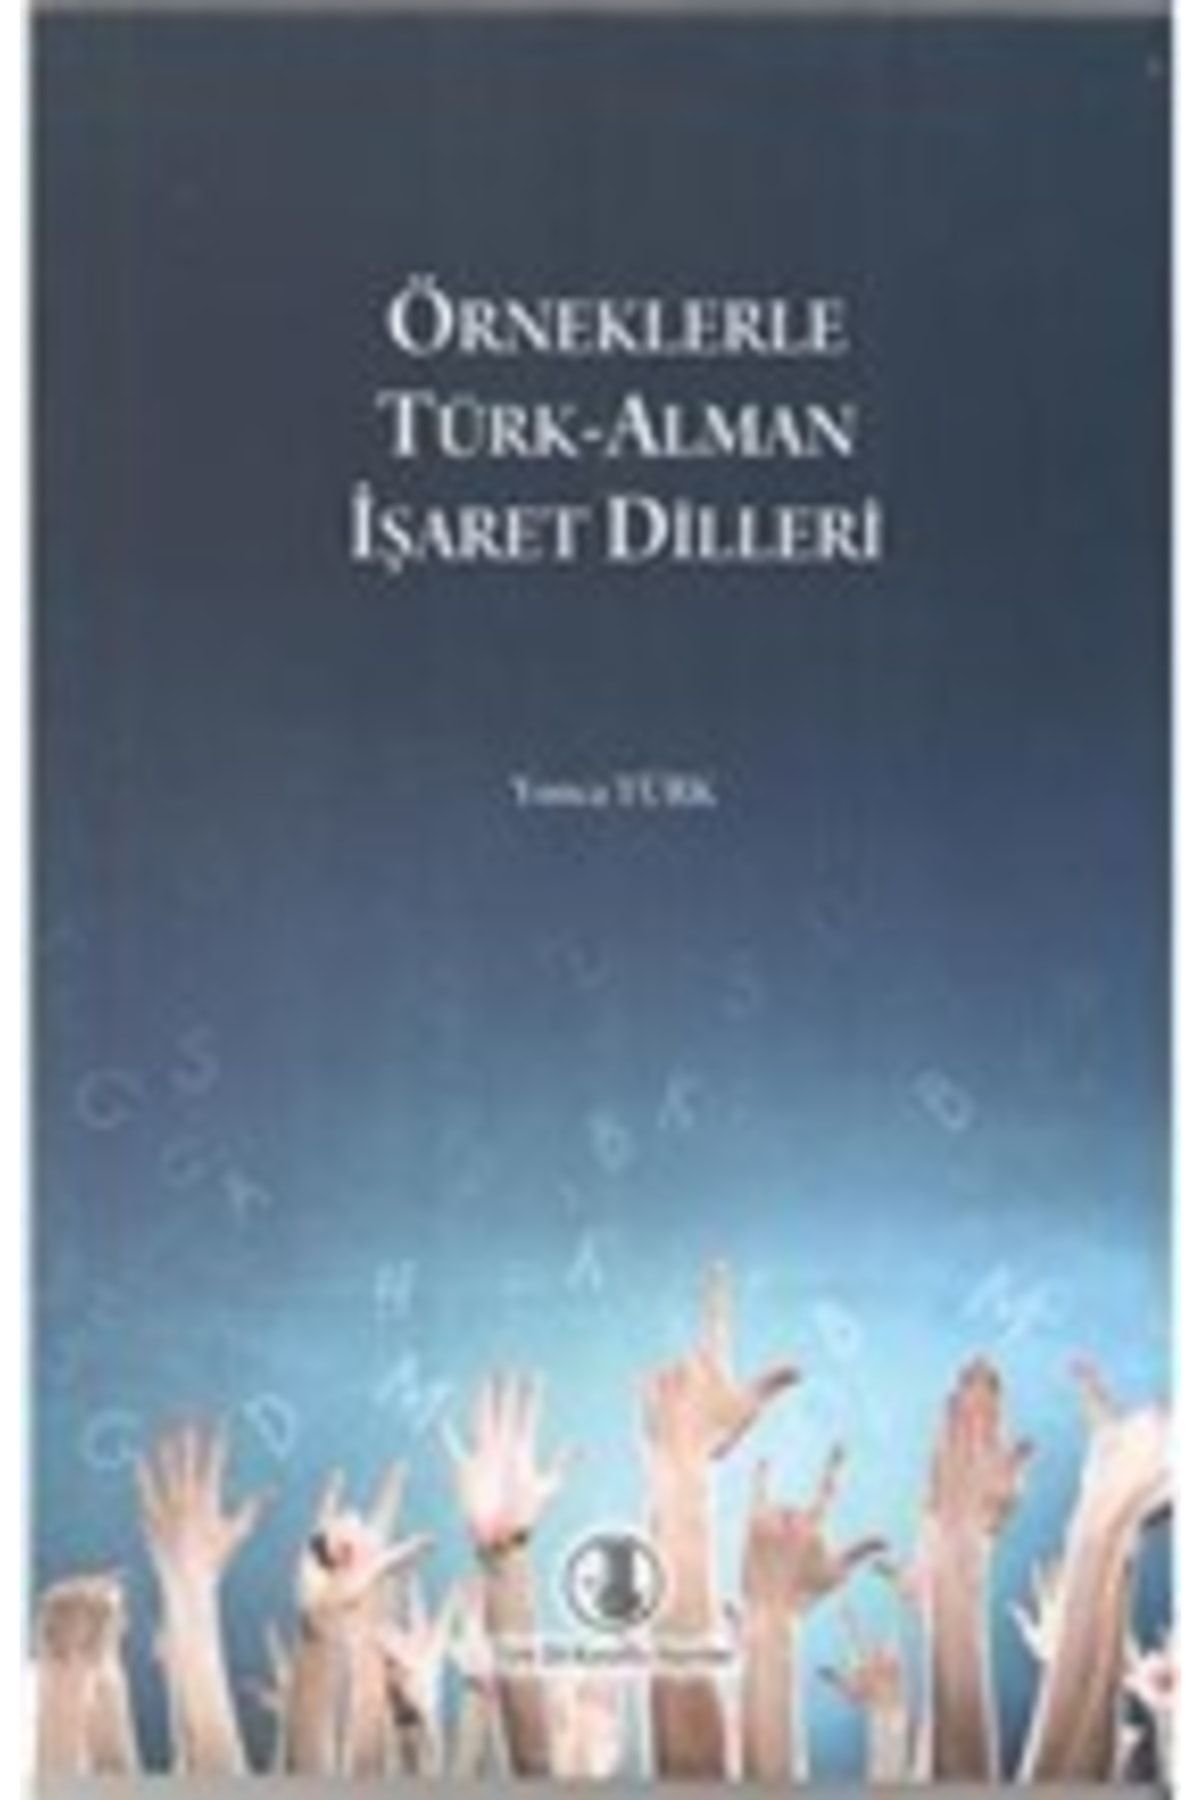 Türk Dil Kurumu Yayınları Örneklerle Türk Alman Işaret Dilleri